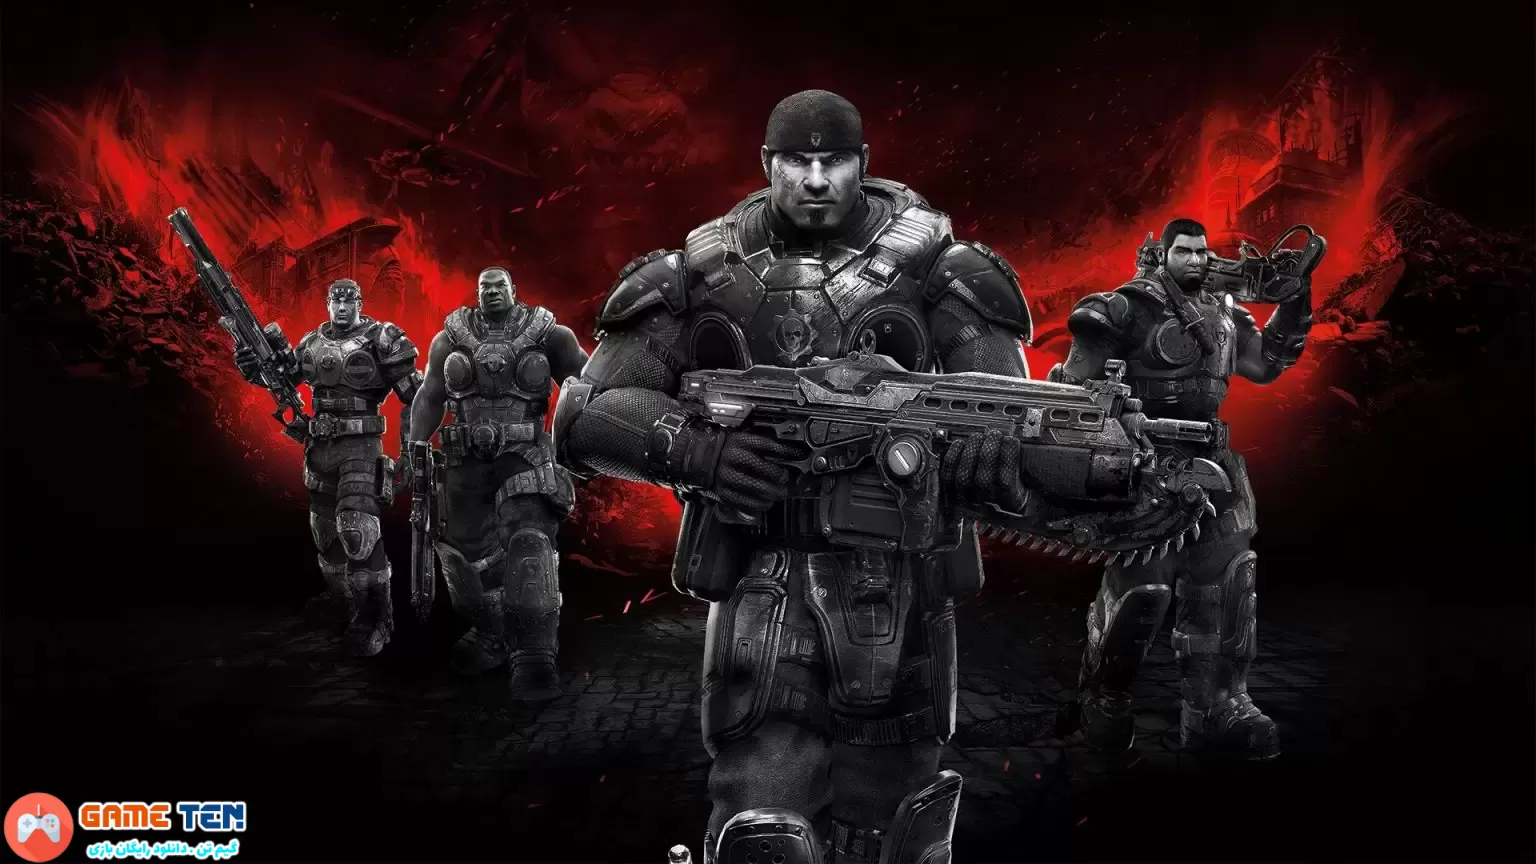 شایعه: احتمال انتشار بازی Gears of War برای پلی استیشن 5